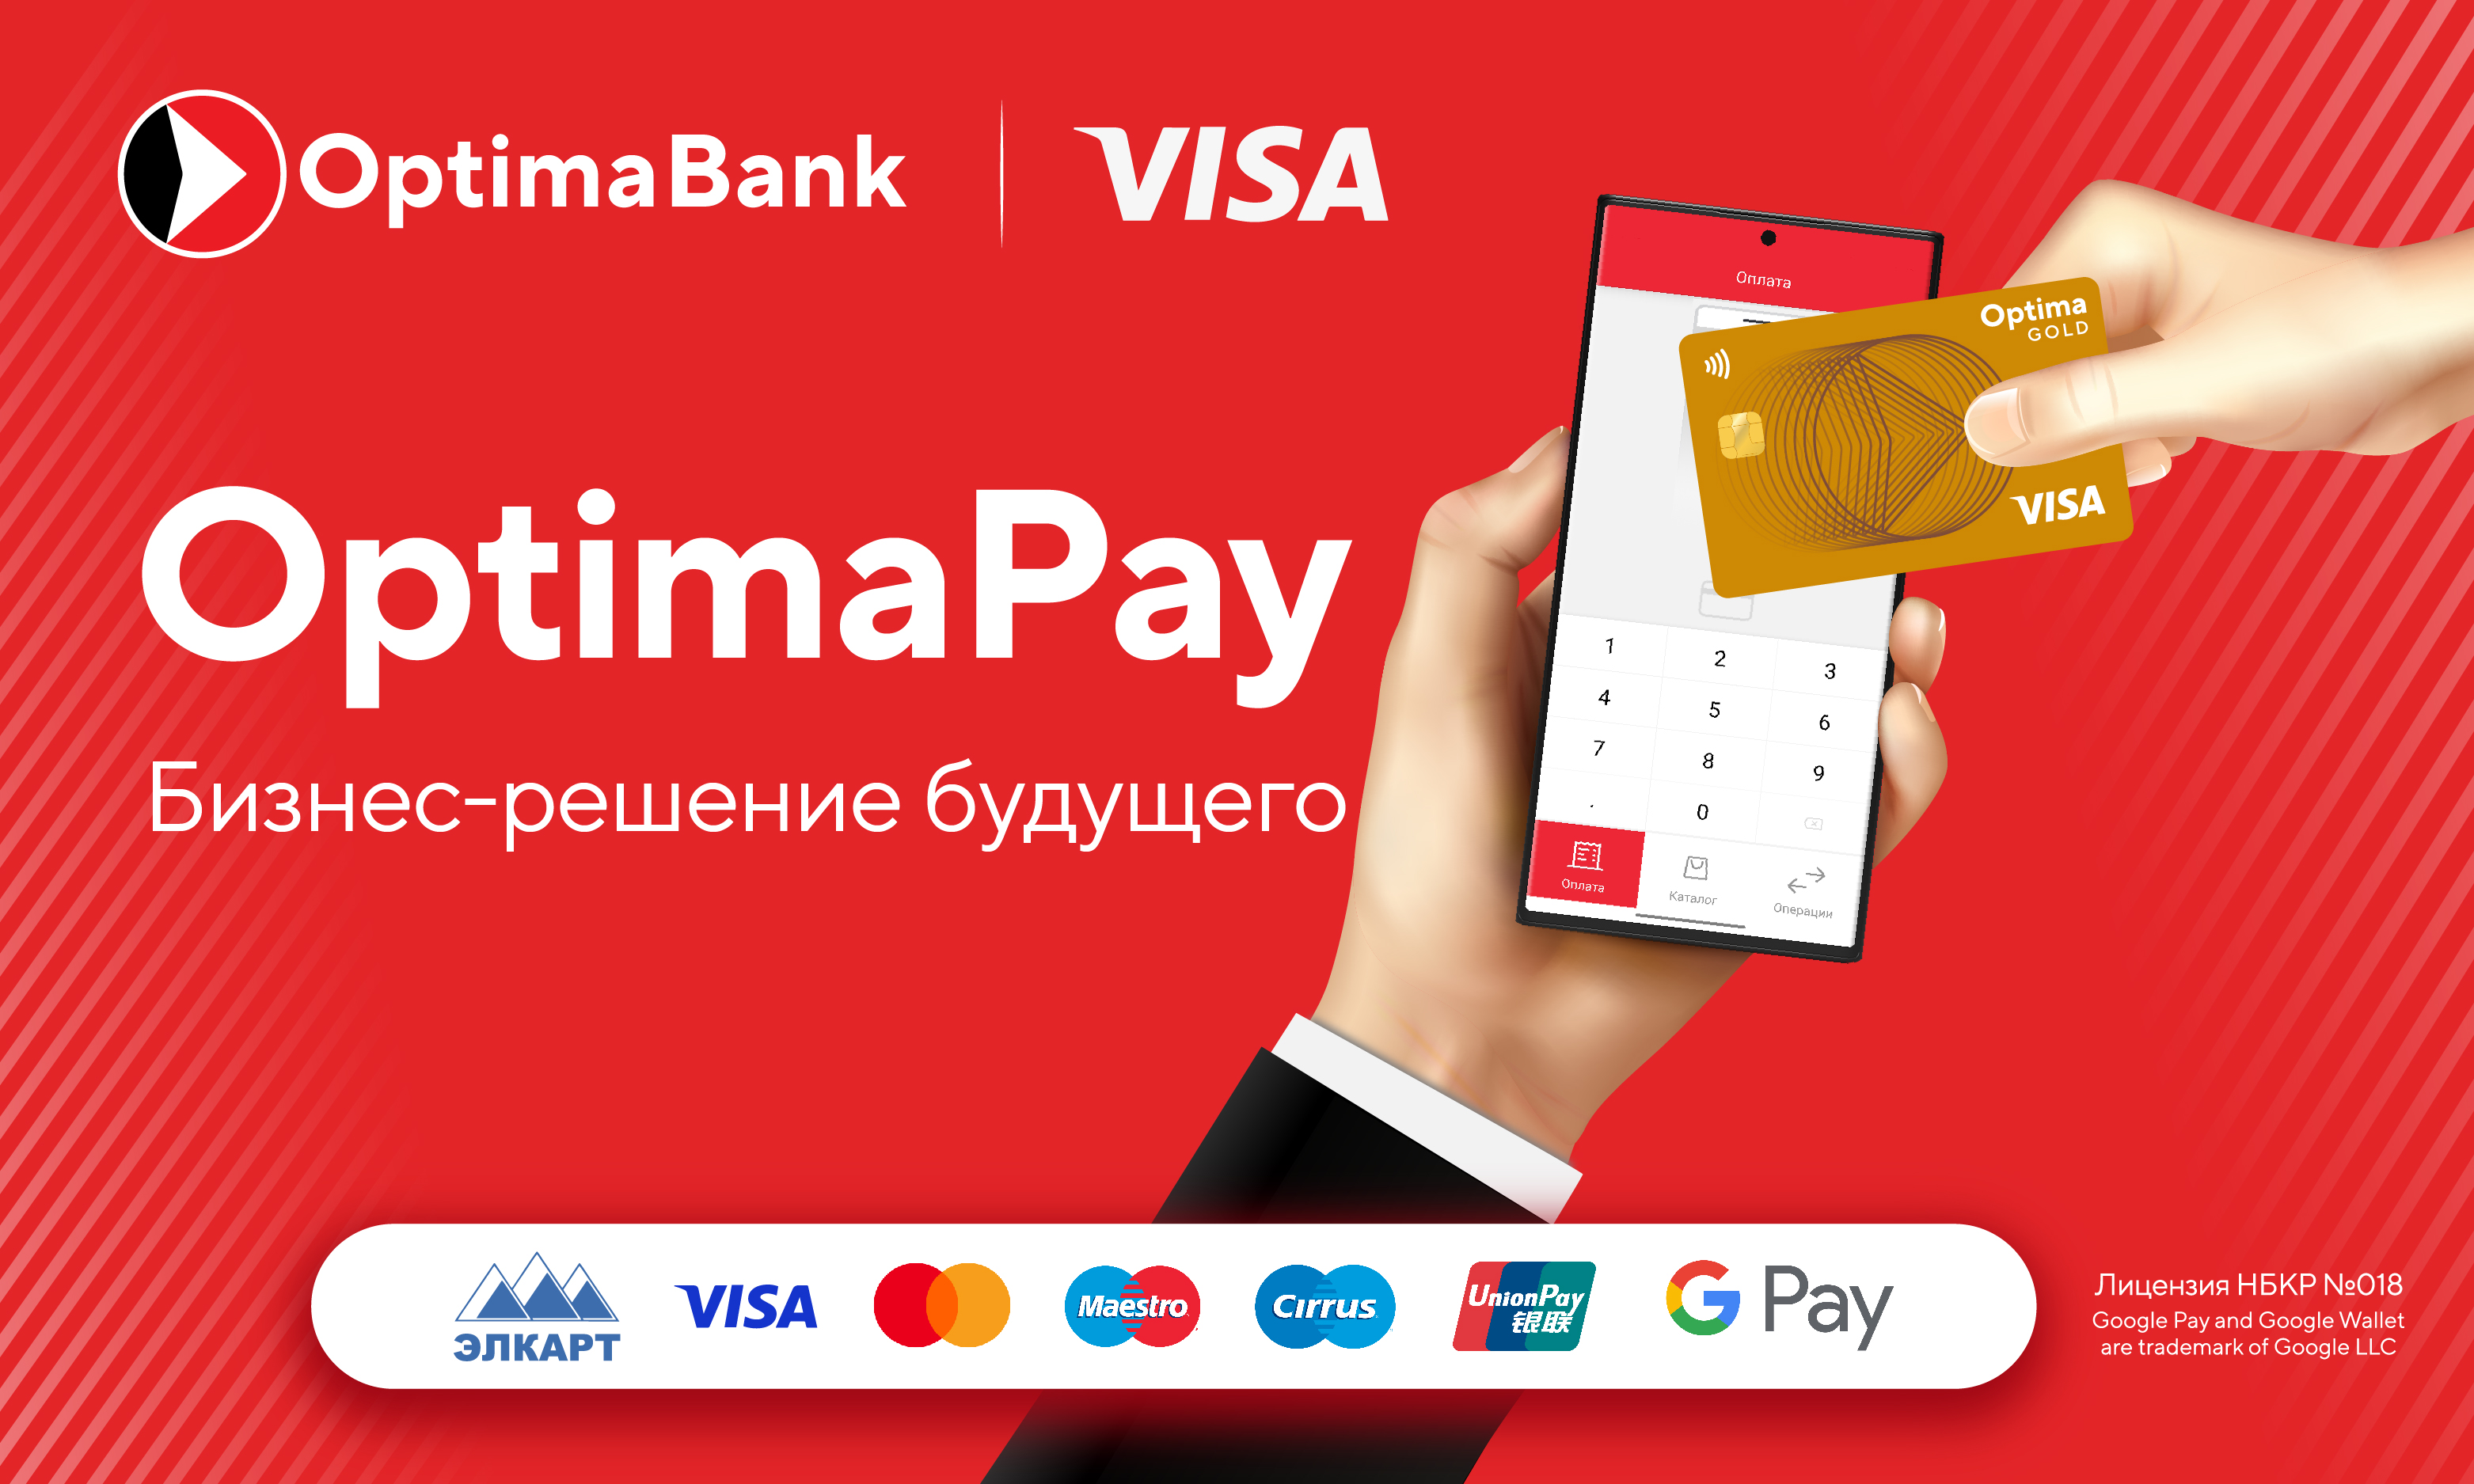 Optima Pay: новое мобильное приложение от «Оптима Банка» и Visa™